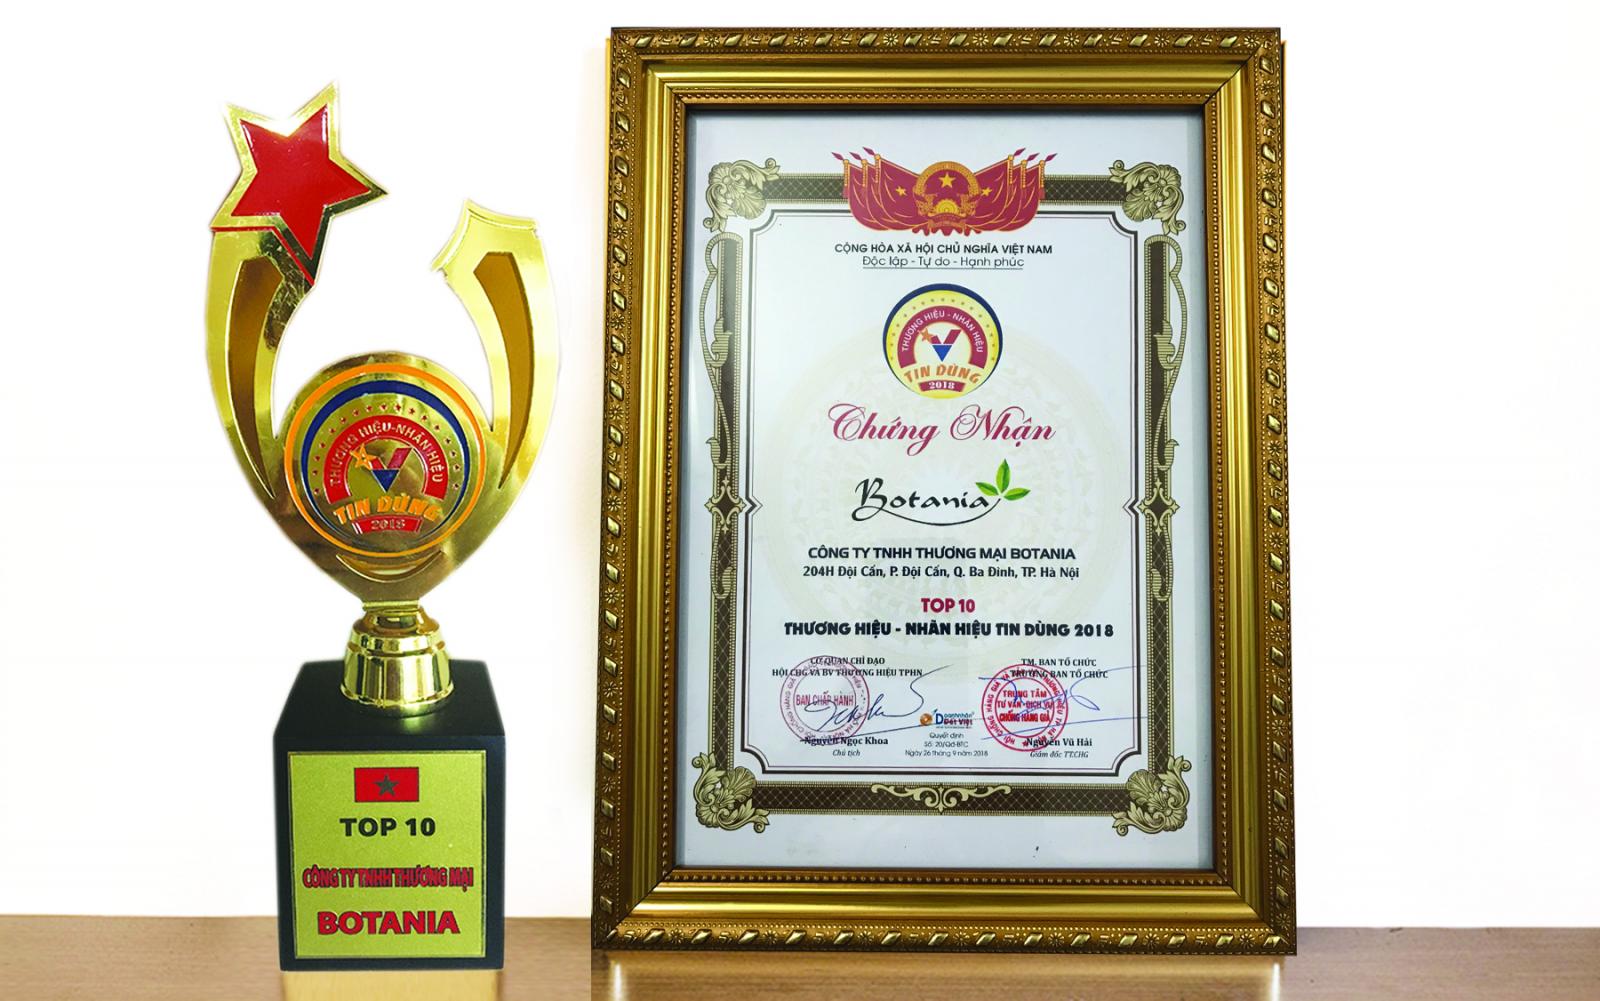 Công ty Botania vinh dự được nhận giải thưởng TOP 10 - Thương hiệu, nhãn hiệu tin dùng